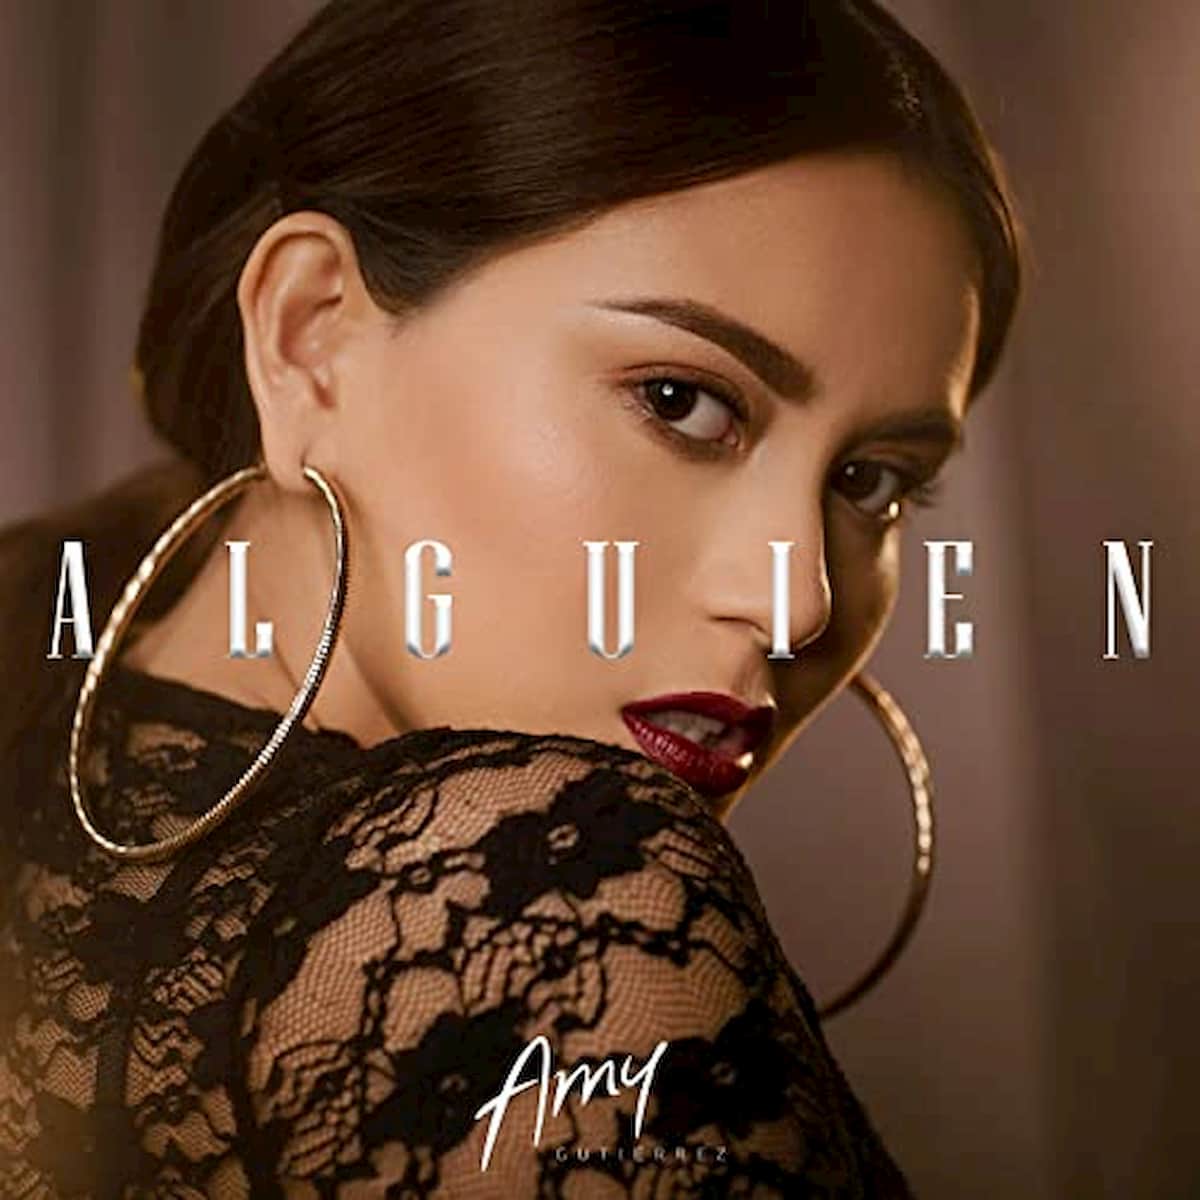 Amy Gutierrez veröffentlicht Salsa-Version ihres Hits Alguien